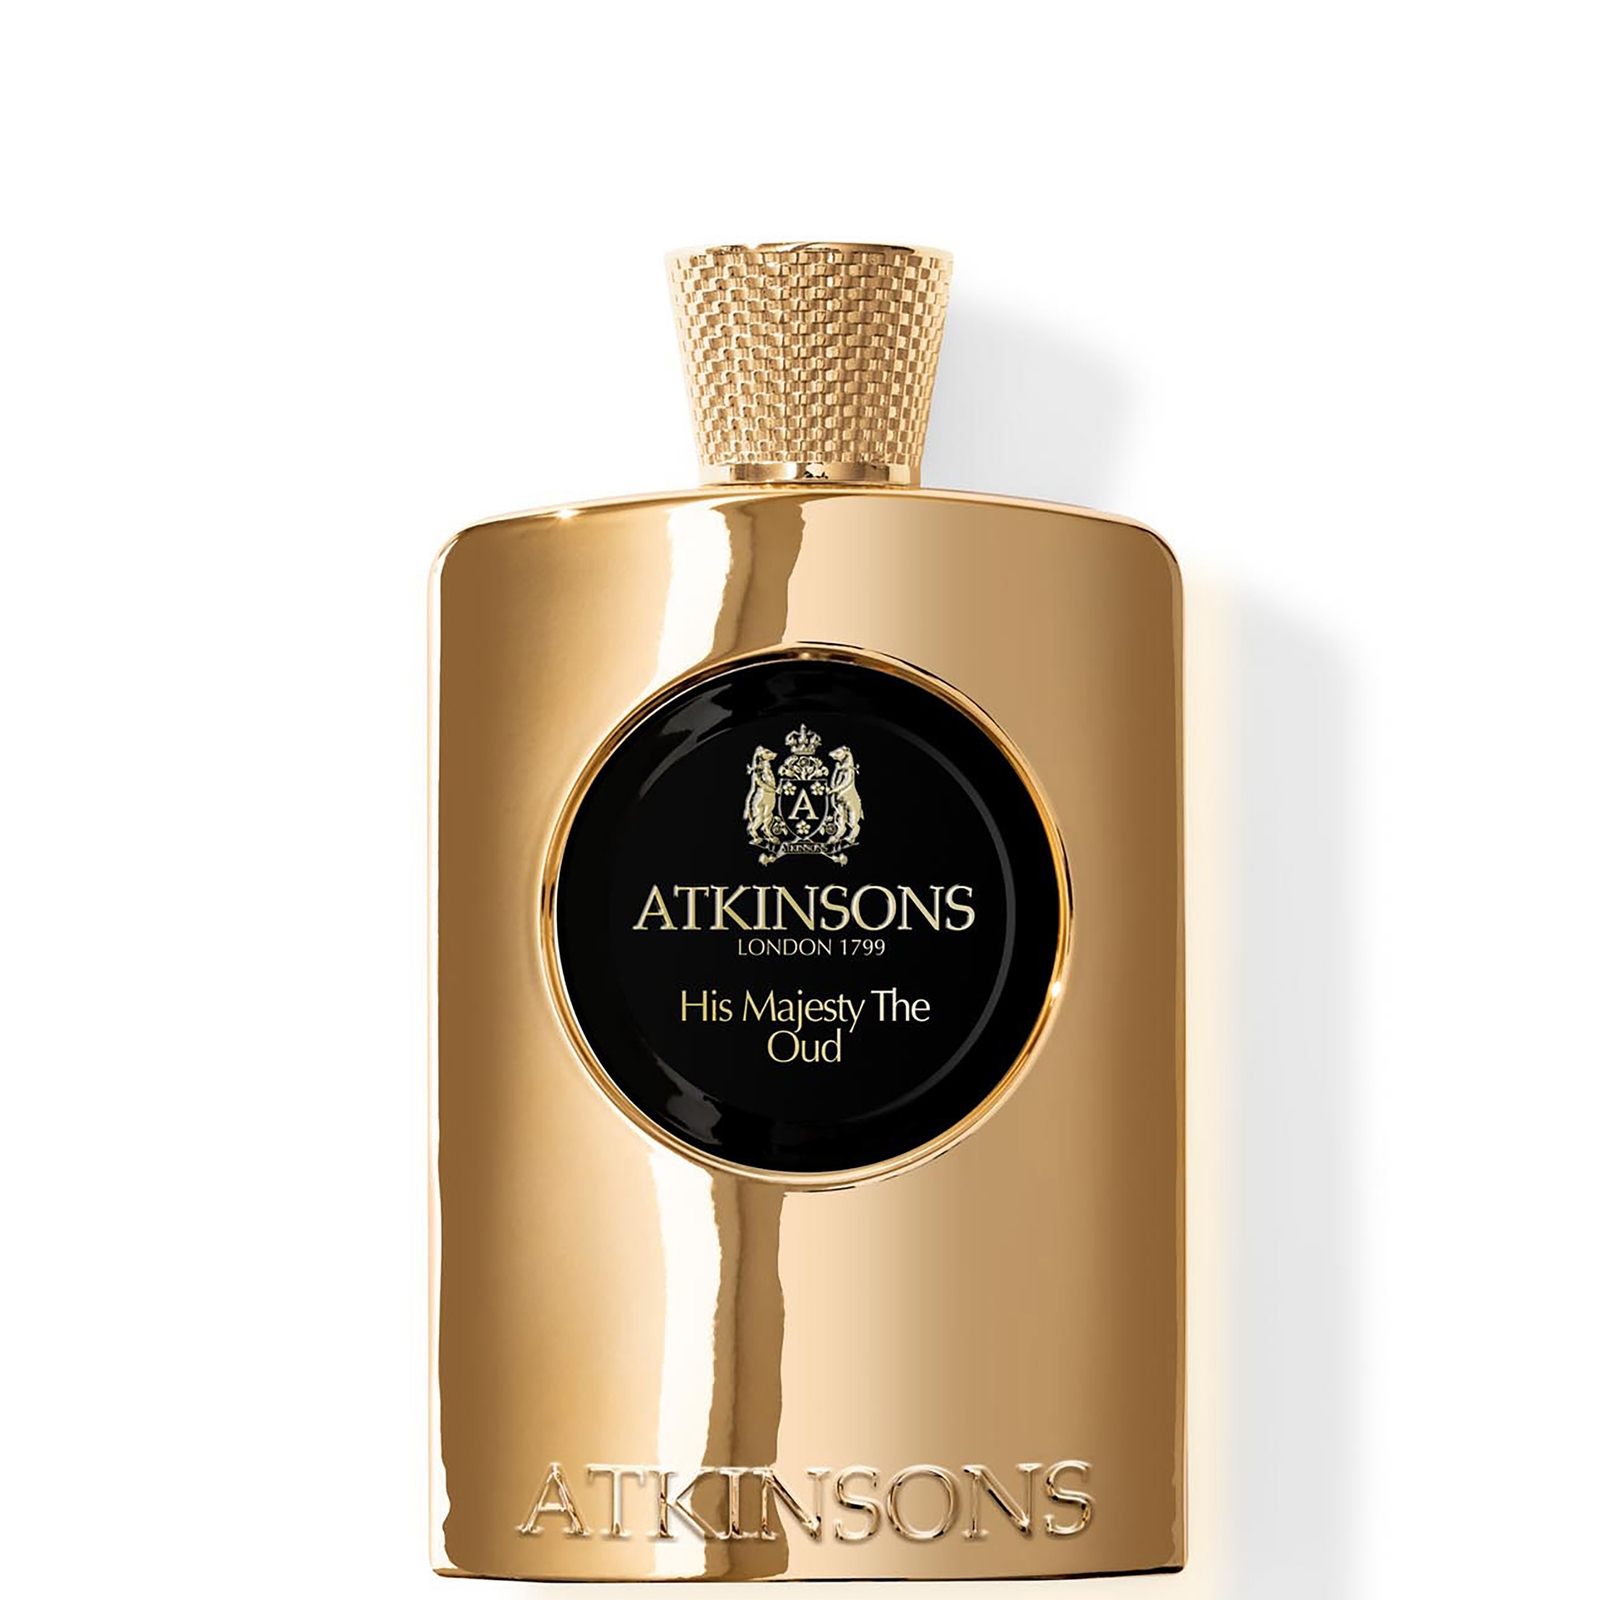 Photos - Women's Fragrance Atkinsons His Majesty the Oud Eau de Parfum 100ml AL3060410 